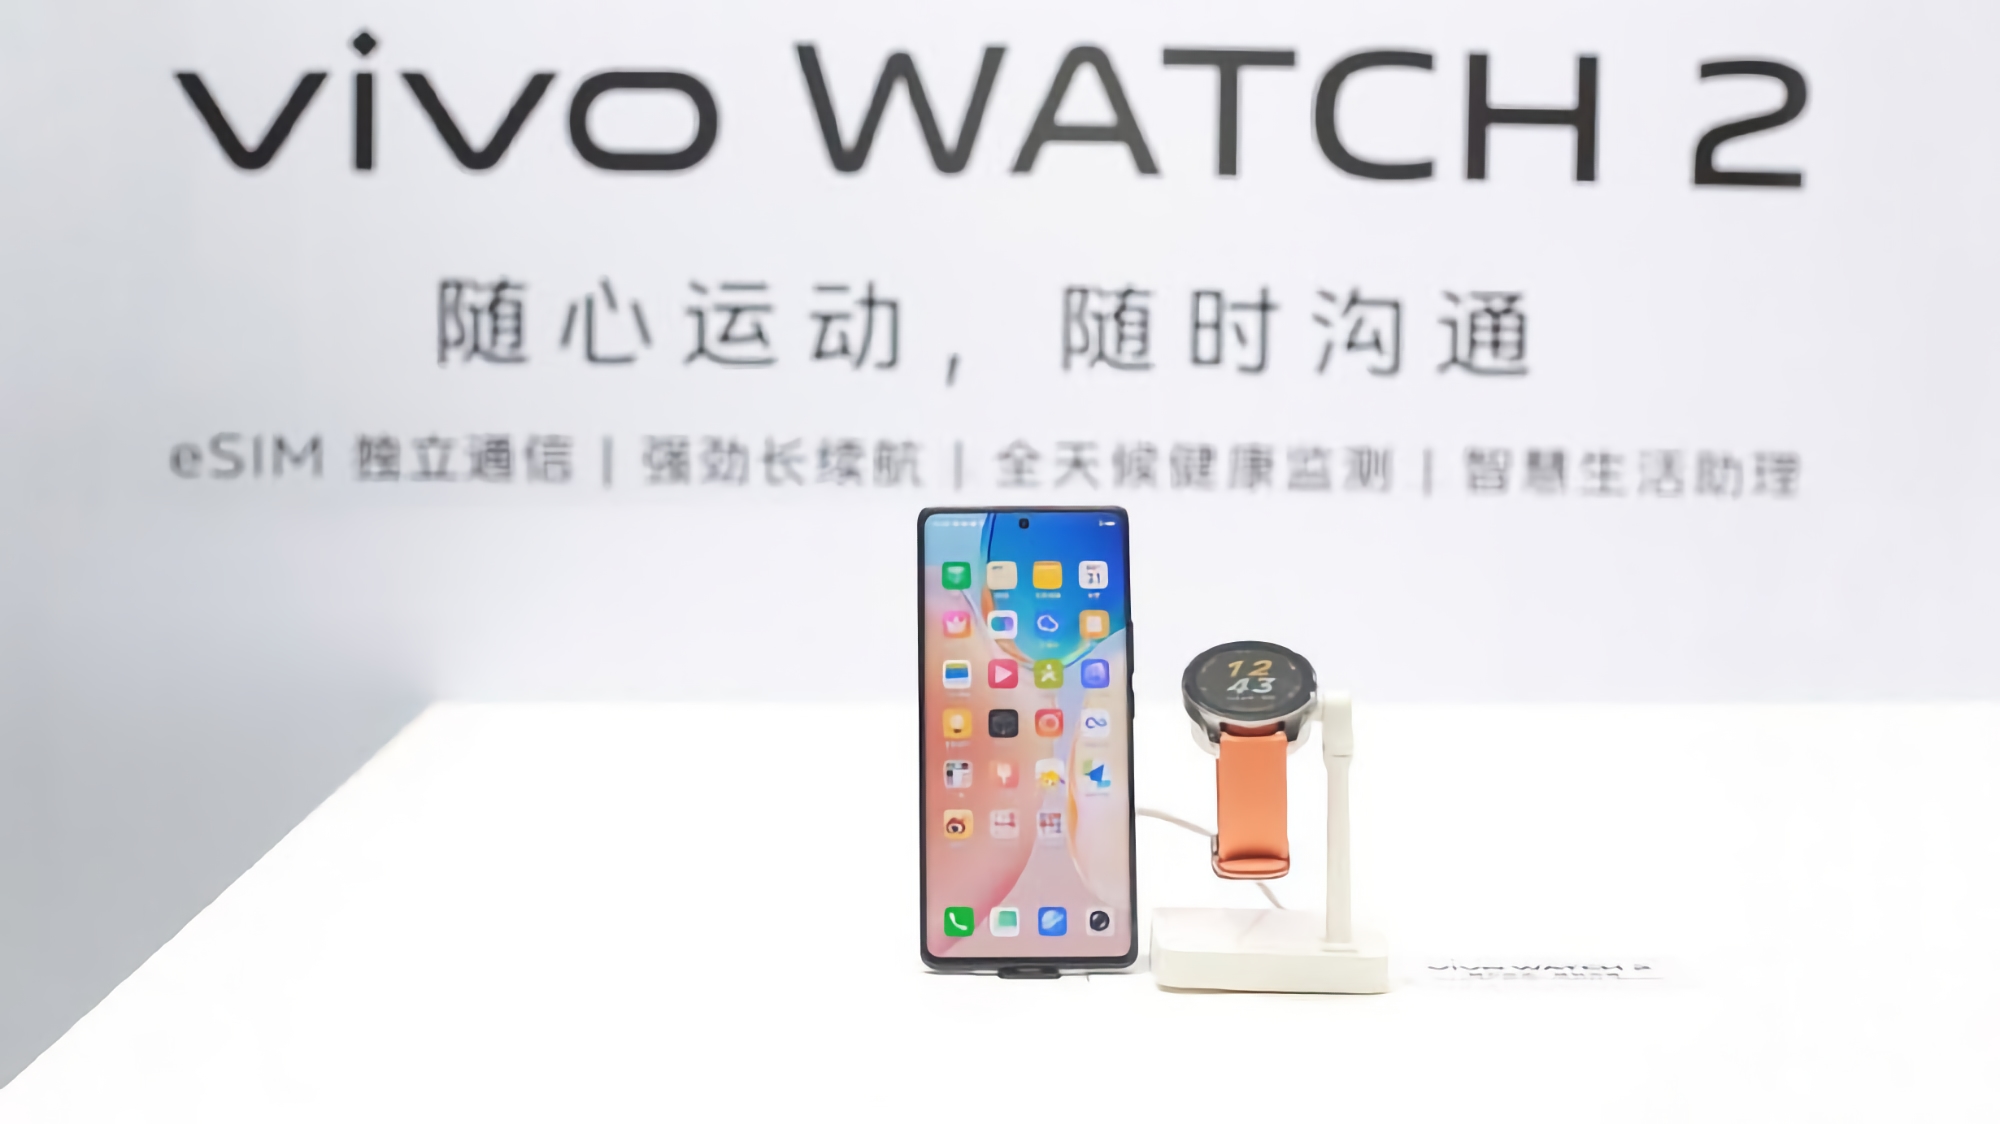 Sans attendre l'annonce : Vivo a montré une montre intelligente Vivo Watch 2 avec support eSIM